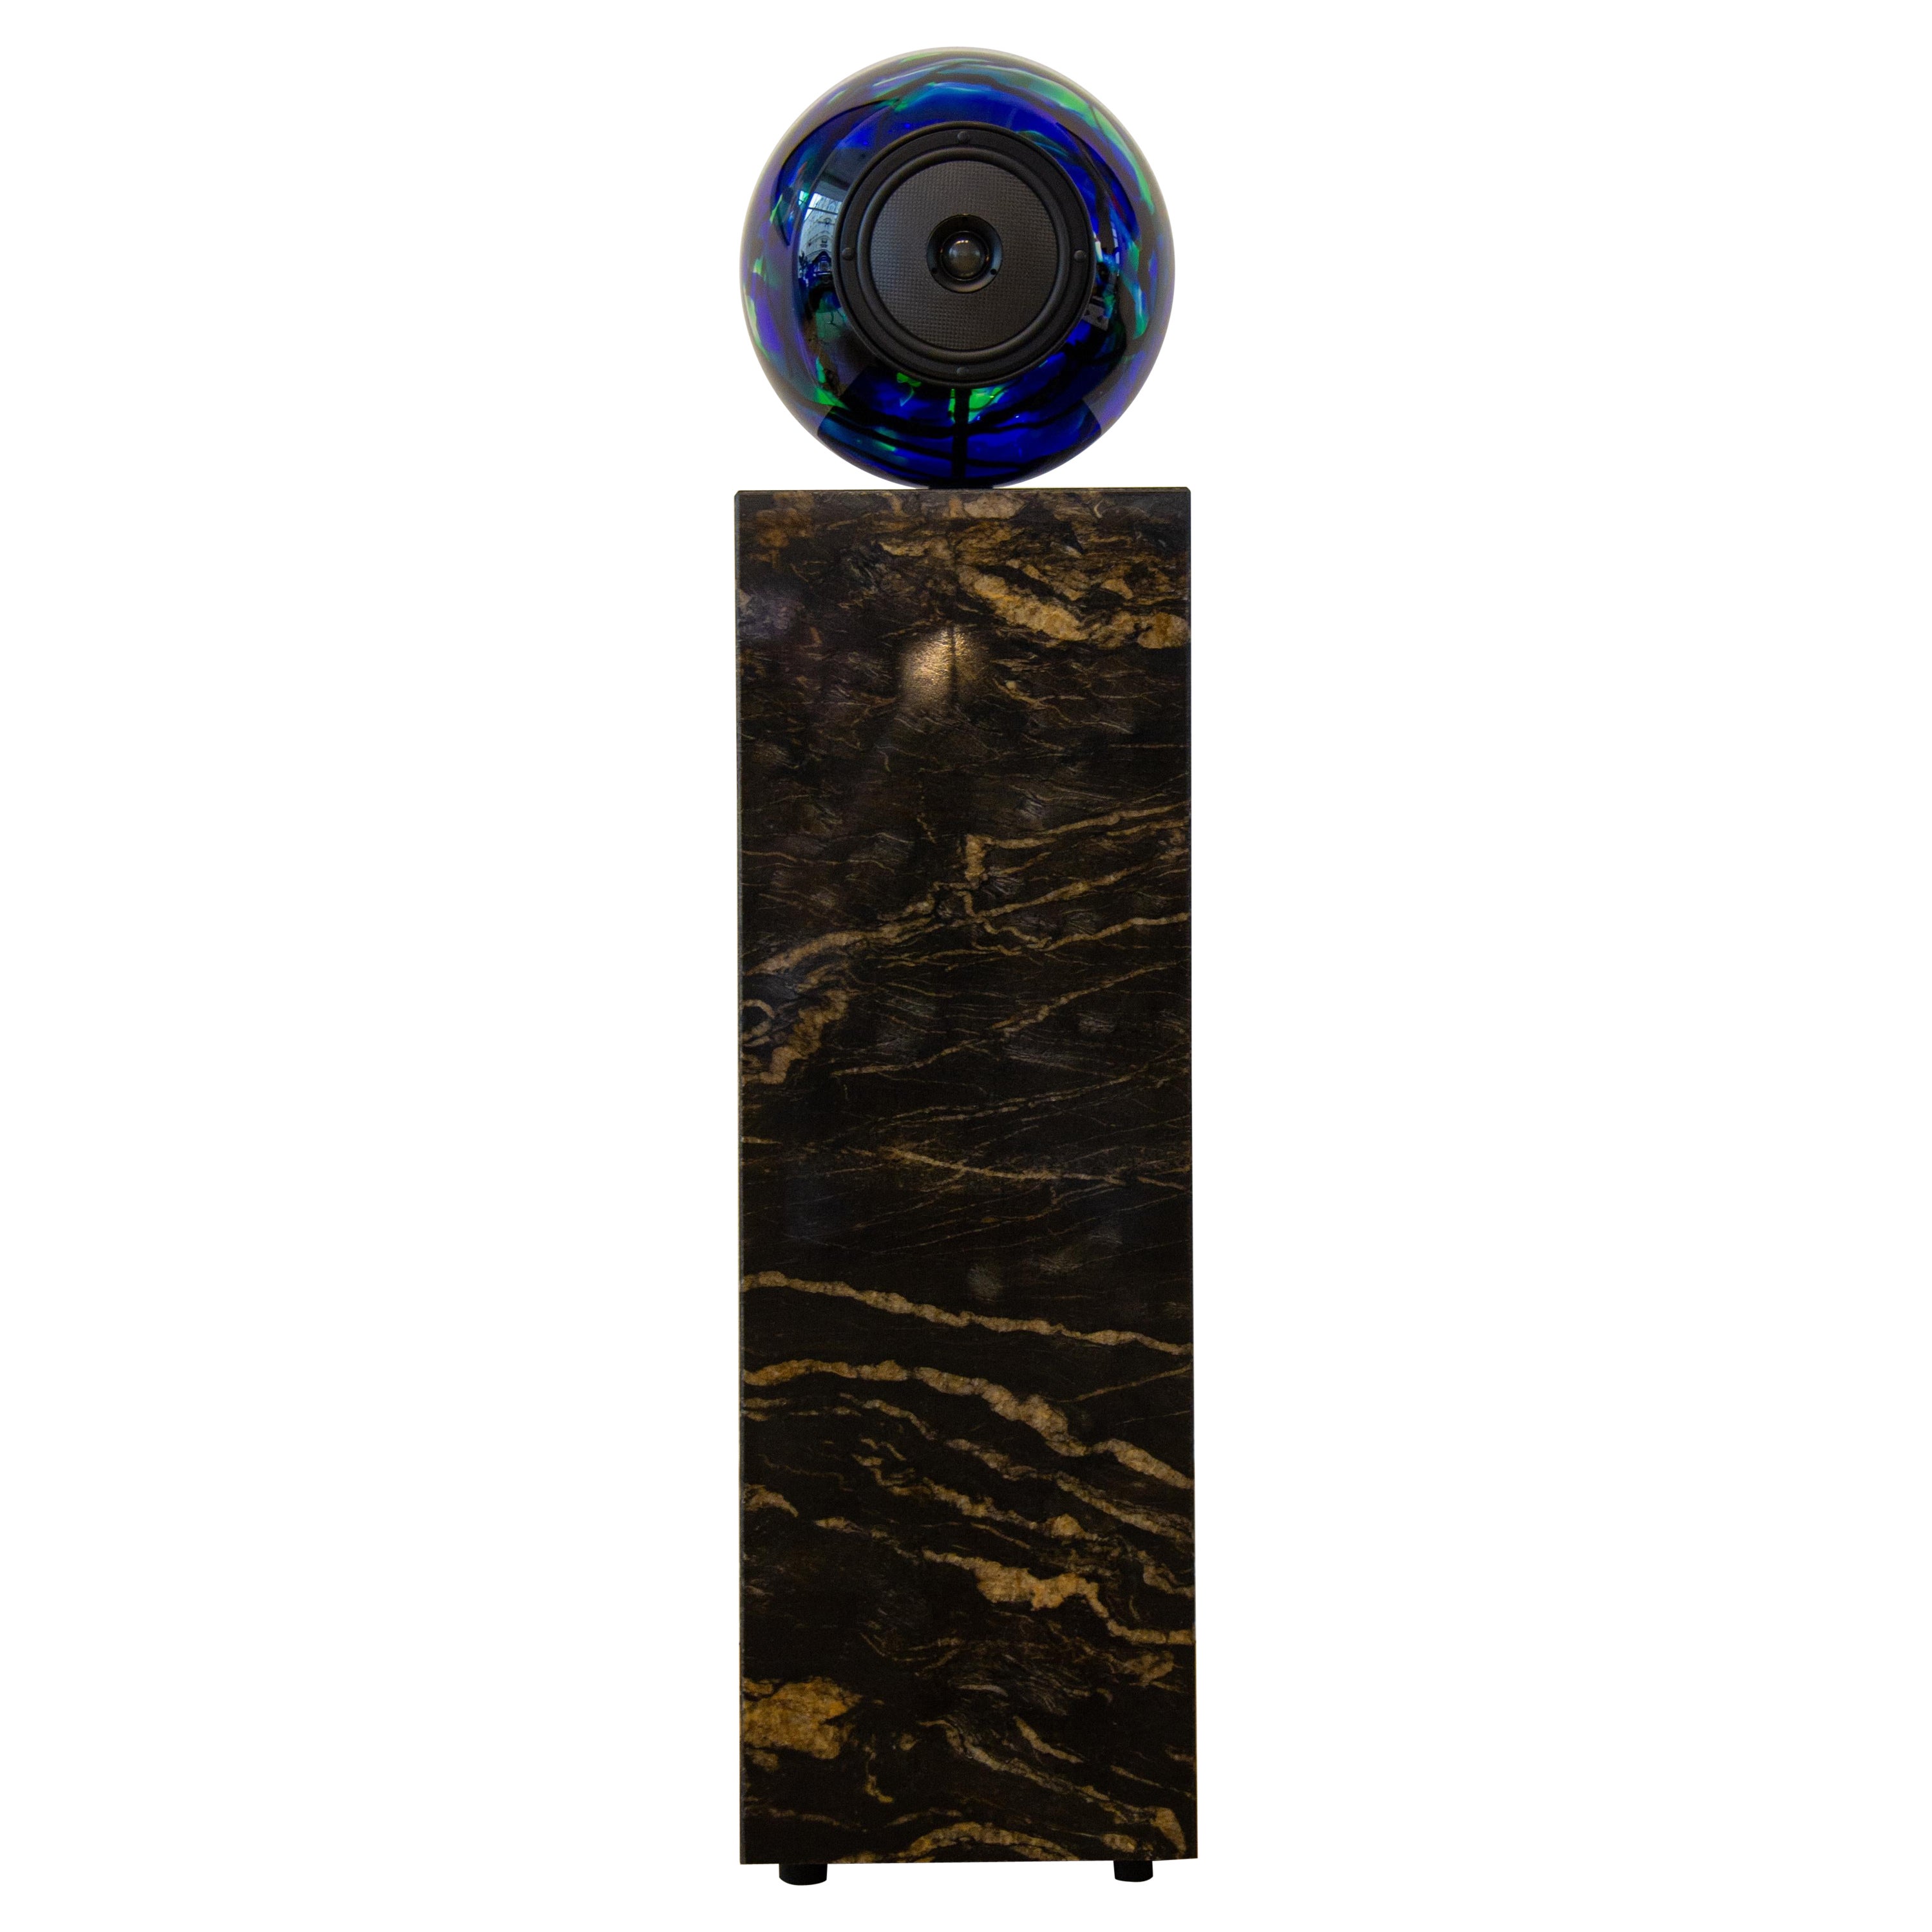 Customizable Glass Ball Full-Range Pedestal Mono Speaker. 